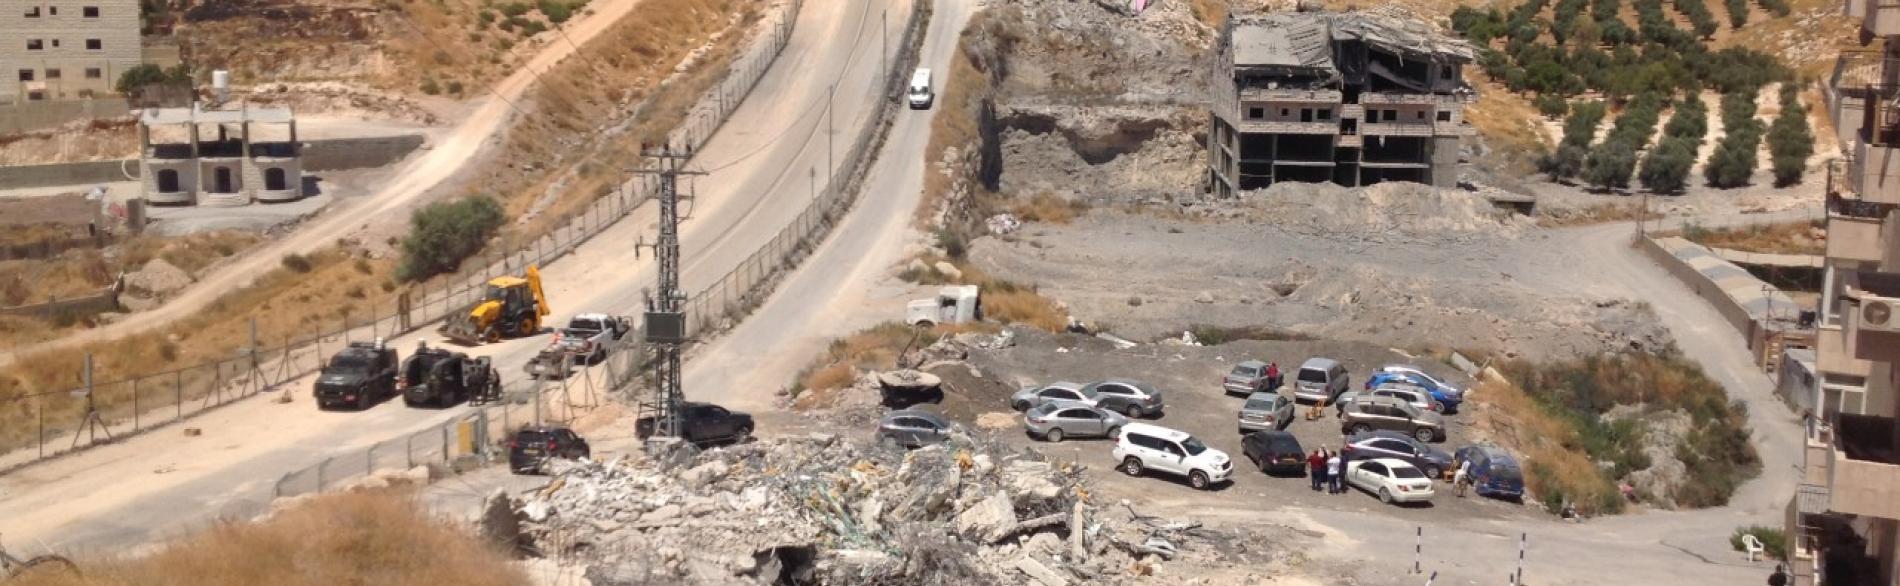 بنايات هُدمت في صور باهر في يوم 22 تموز/يوليو 2019 بجوار الطريق الأمني المحاذي للجدار © - تصوير مكتب الأمم المتحدة لتنسيق الشؤون الإنسانية